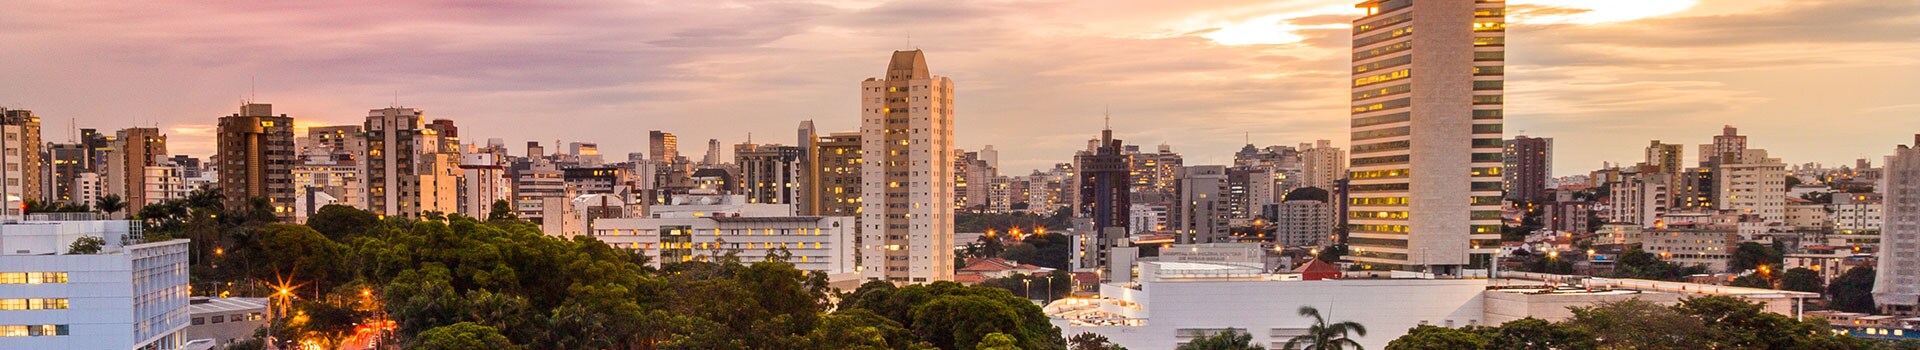 Curitiba - afonso pena - Belo horizonte - minas gerais